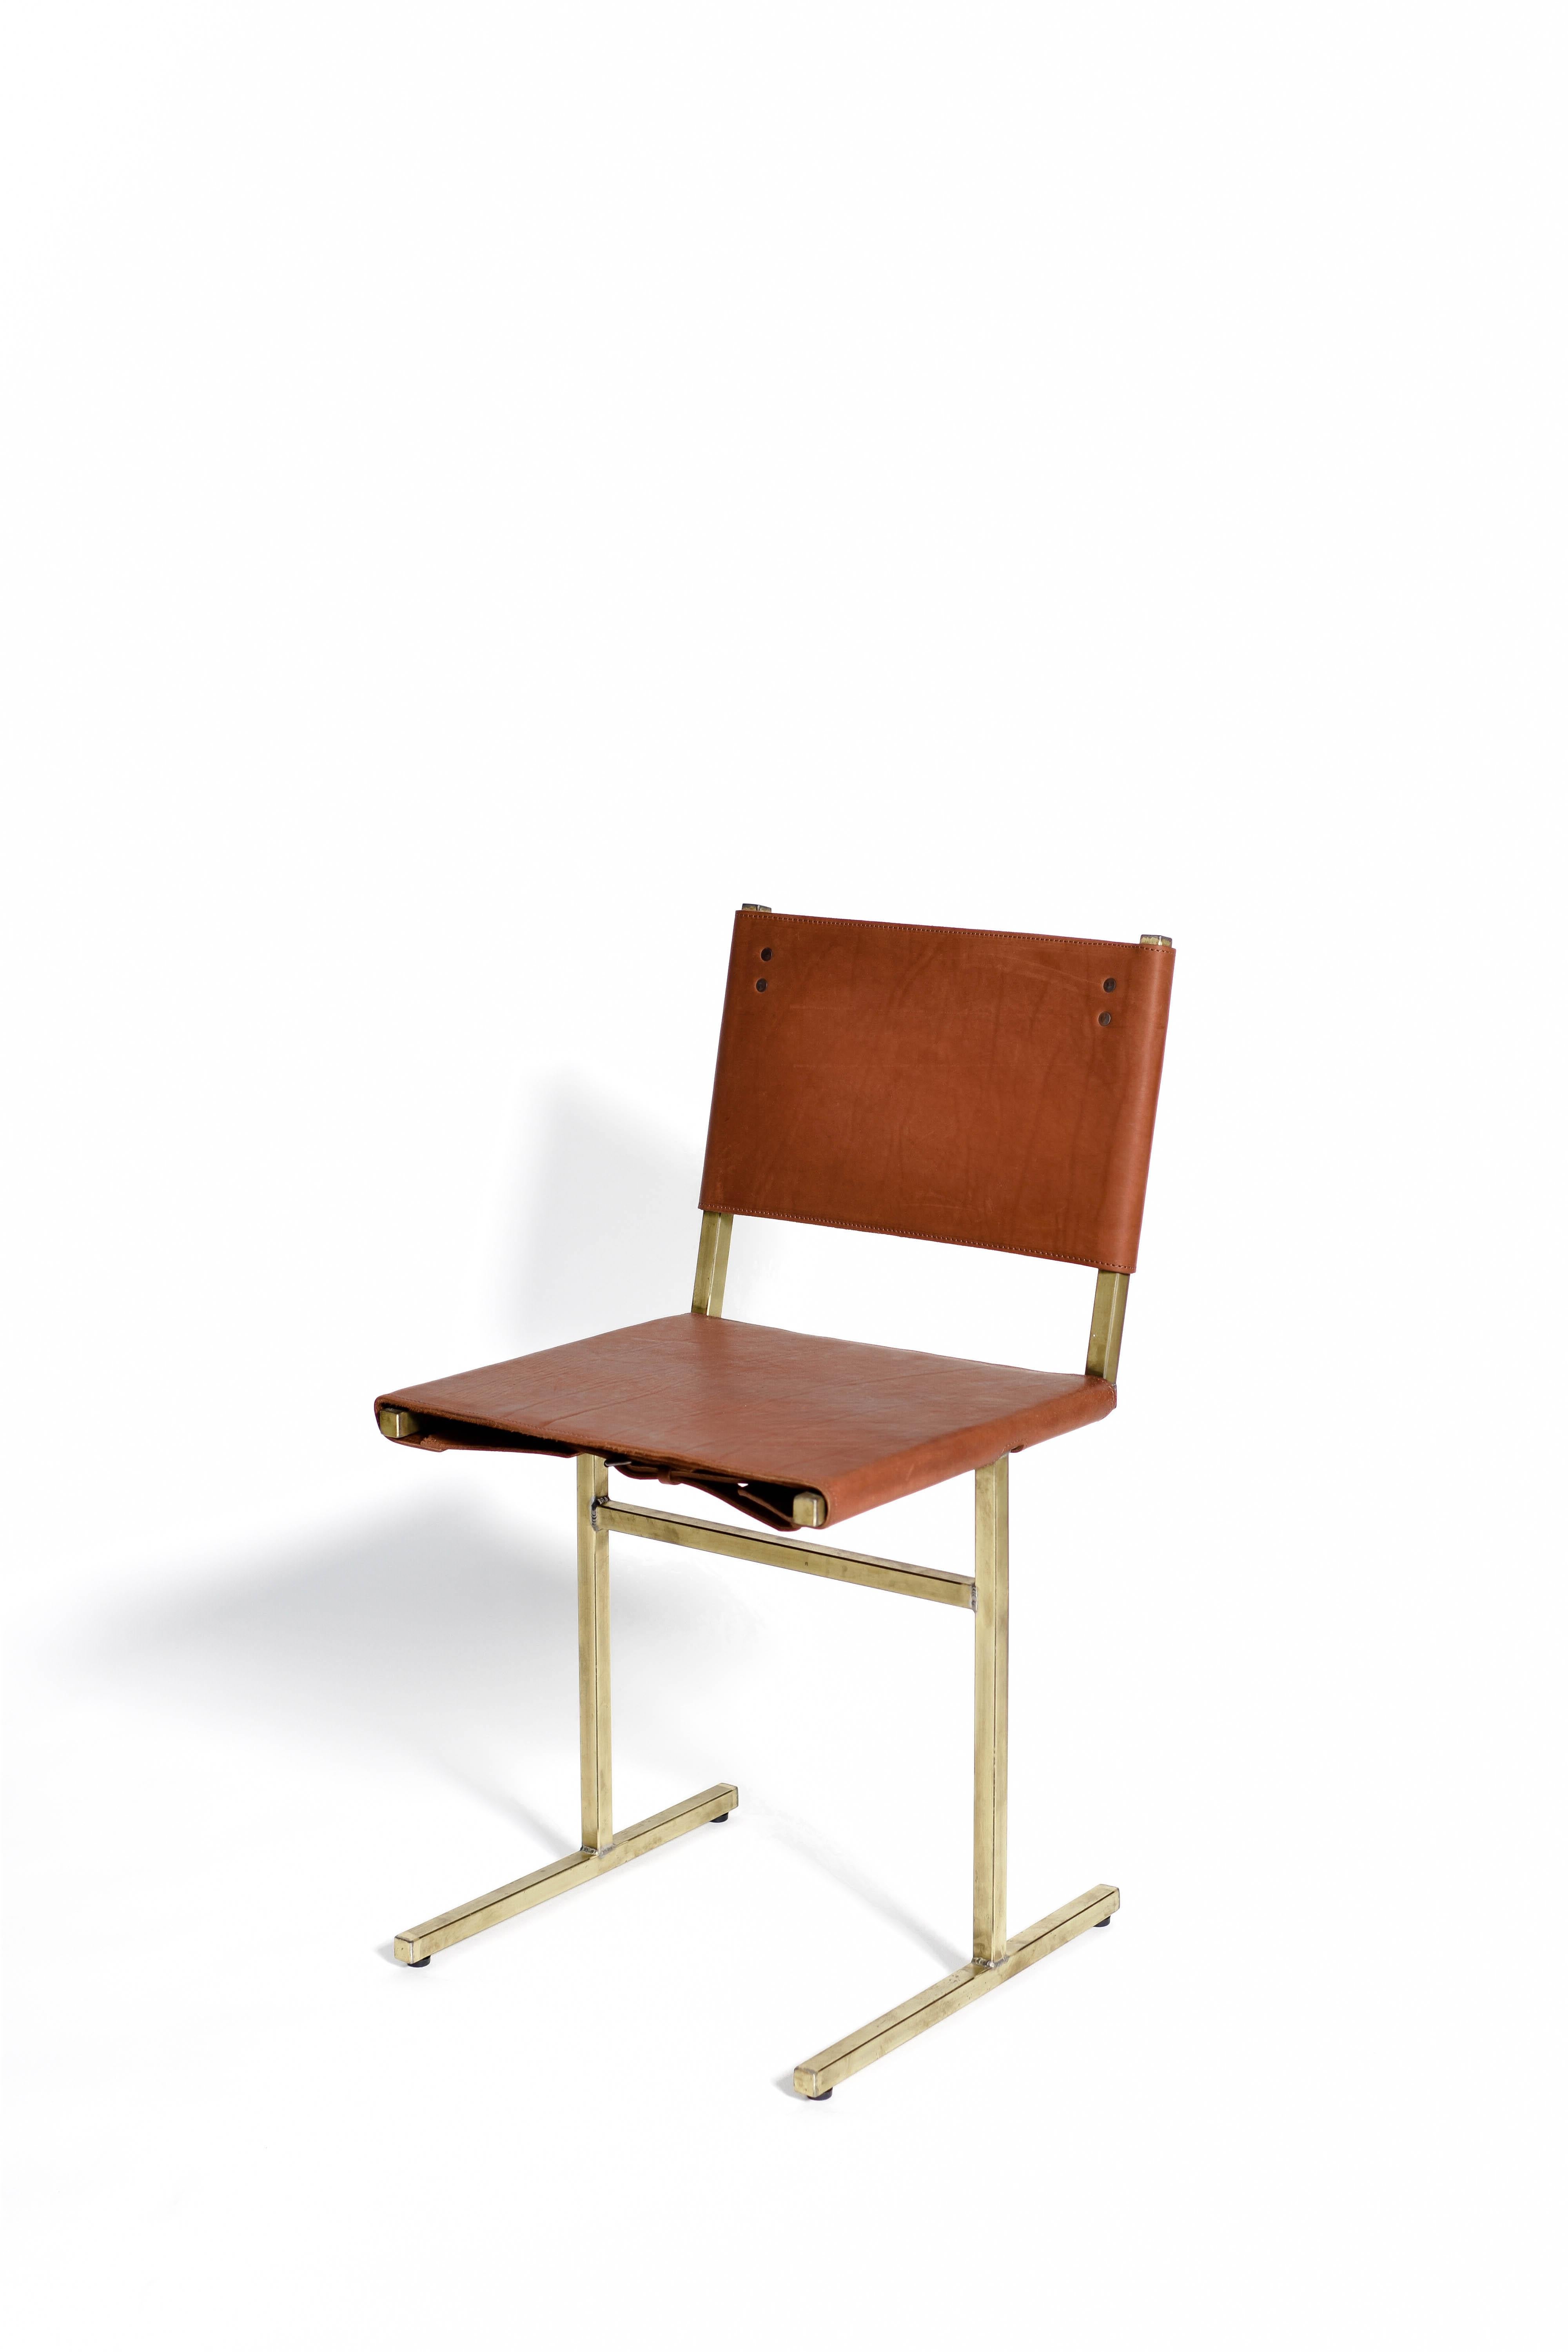 Moss Green Memento Chair, Jesse Sanderson 2